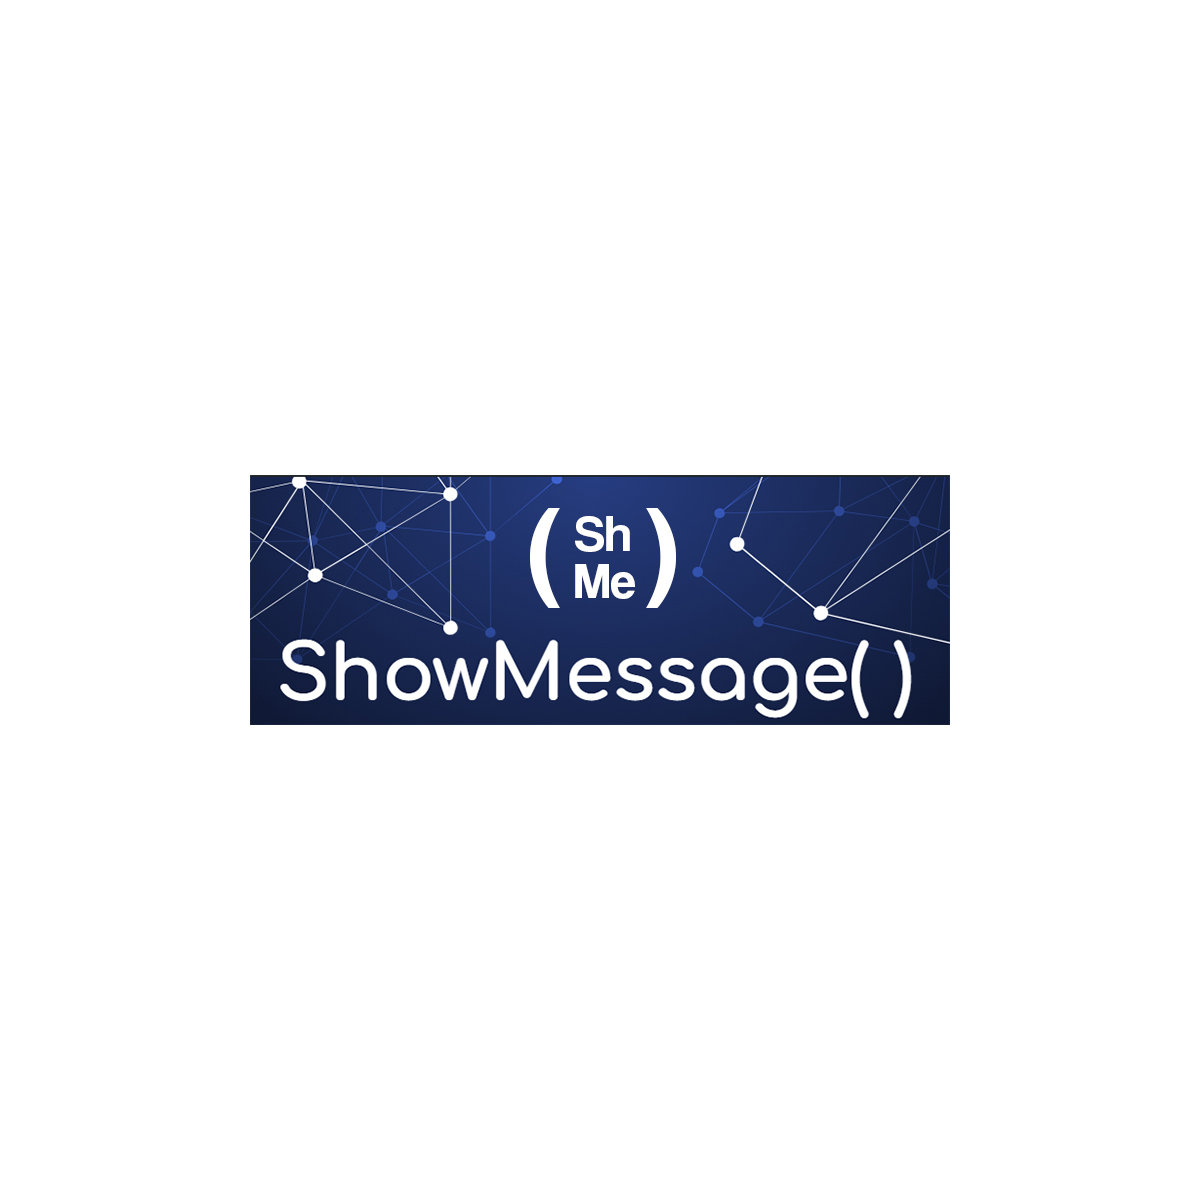 WhatsApp e Telegram in vMix, automaticamente, con ShowMessage( )